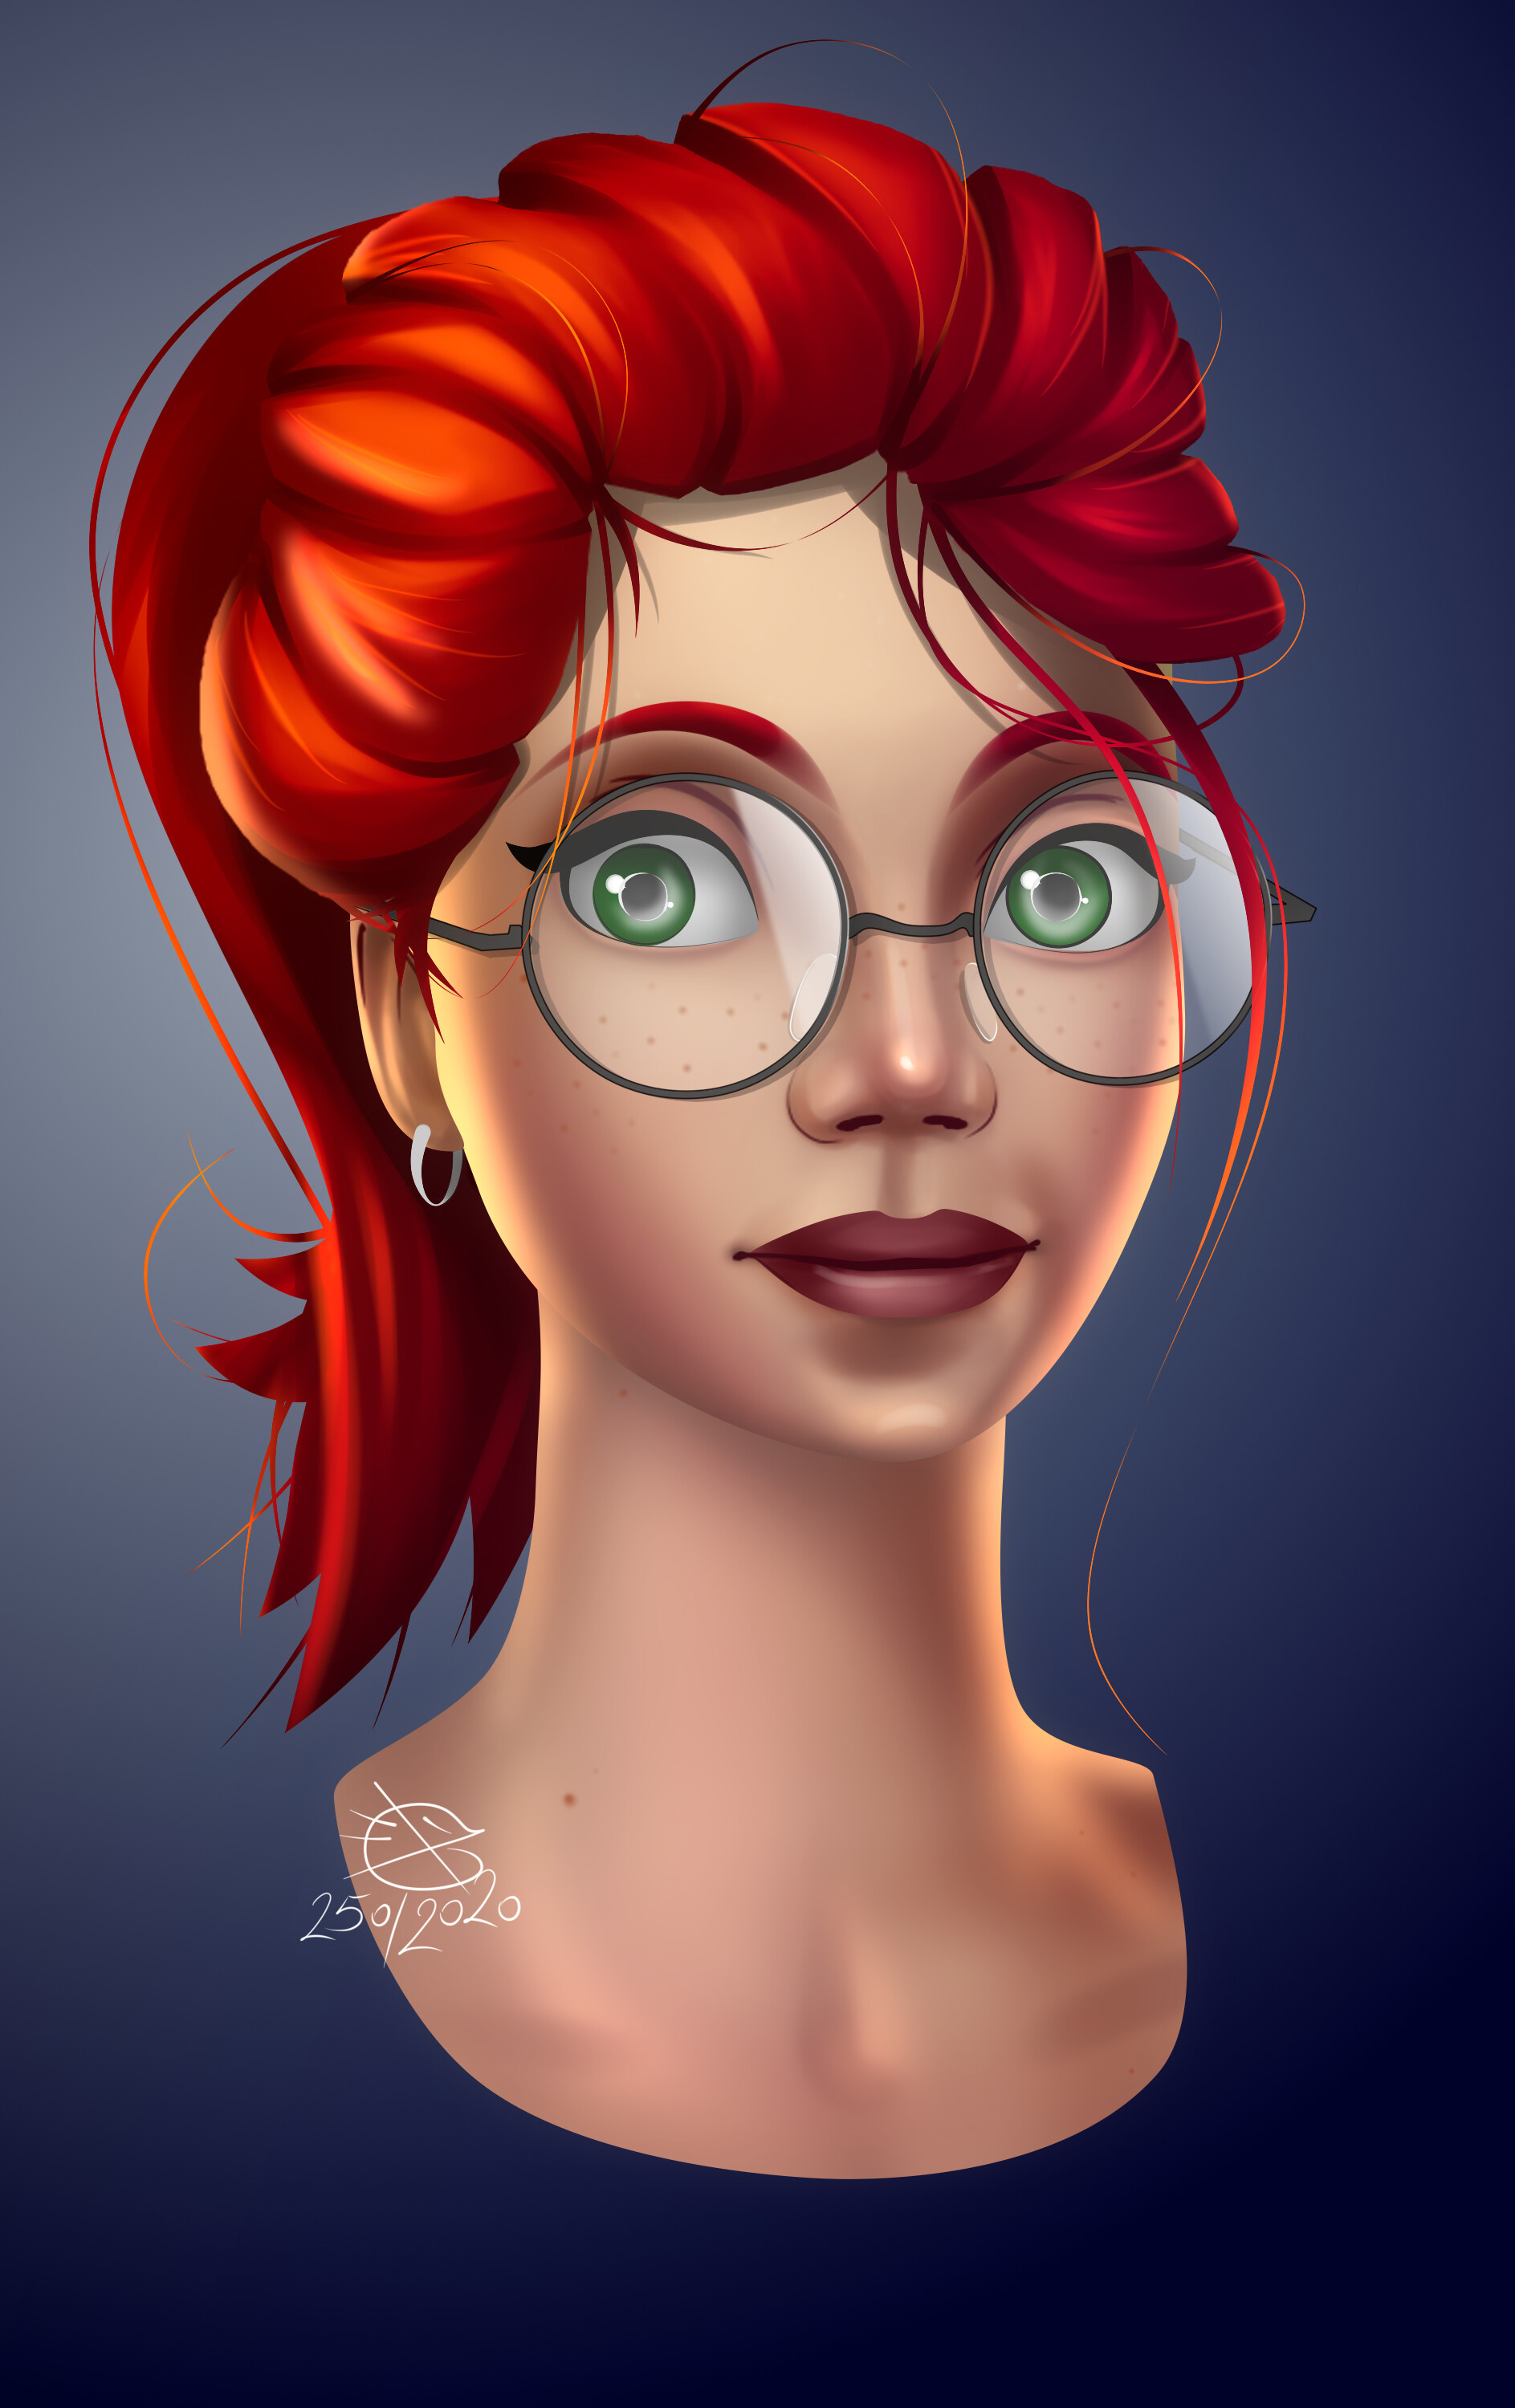 ArtStation - Ginger portrait